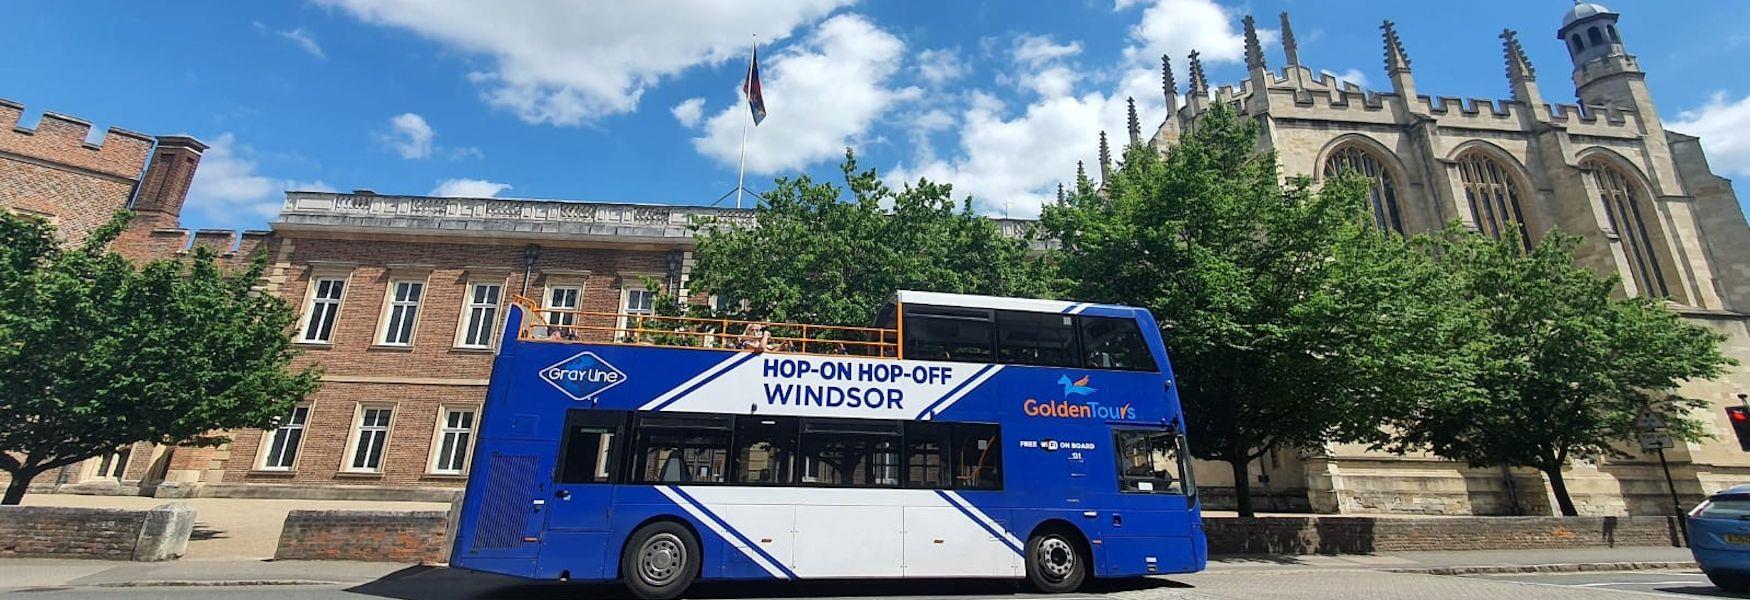 Golden Tours hop-on, hop-off open top bus tours